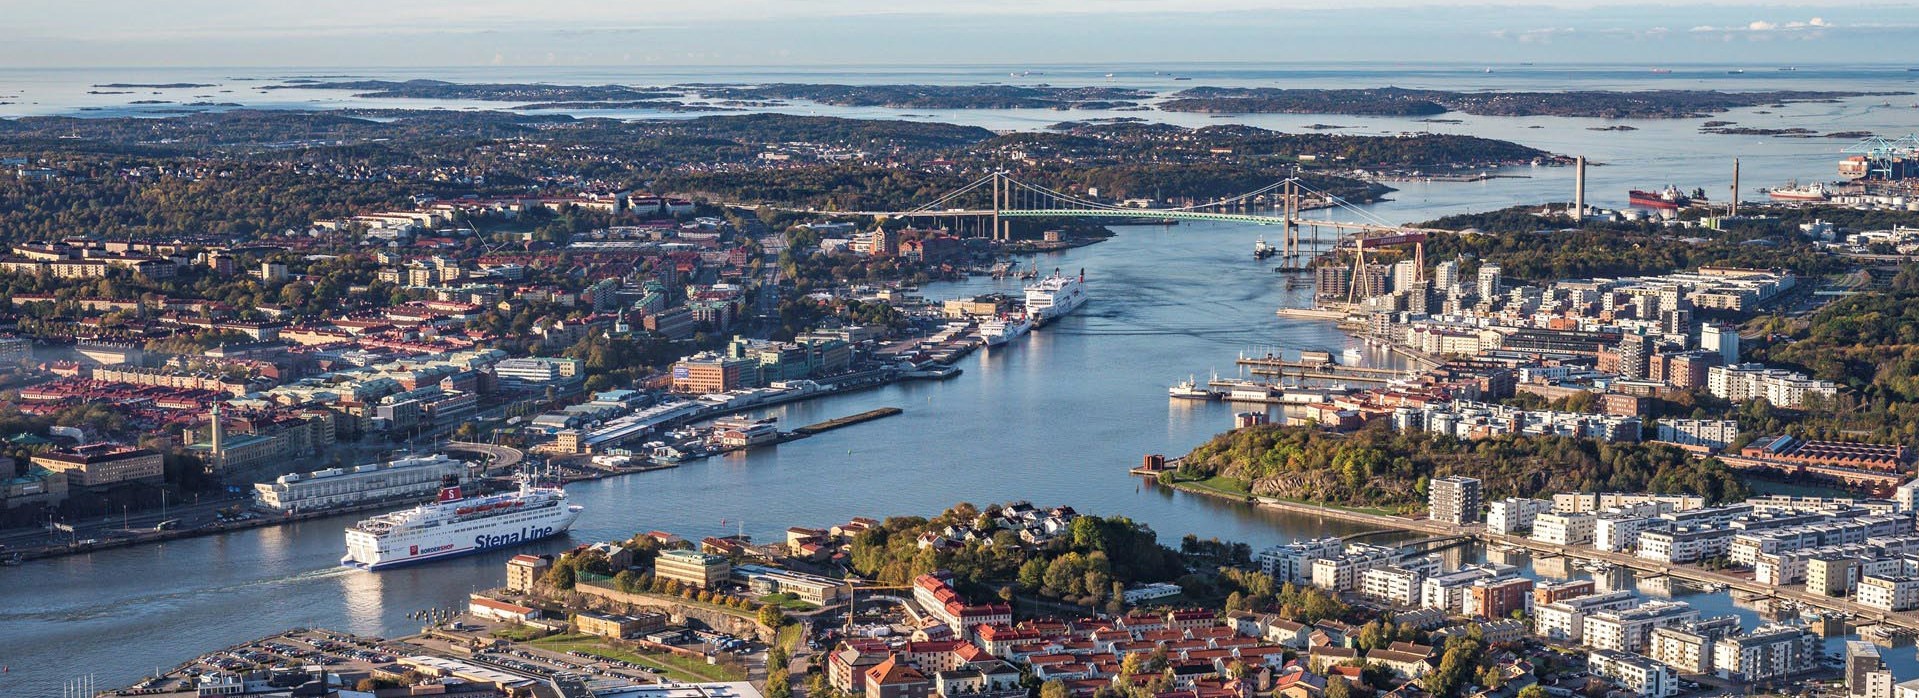 Vi utför billig bra flyttstädning i Göteborg